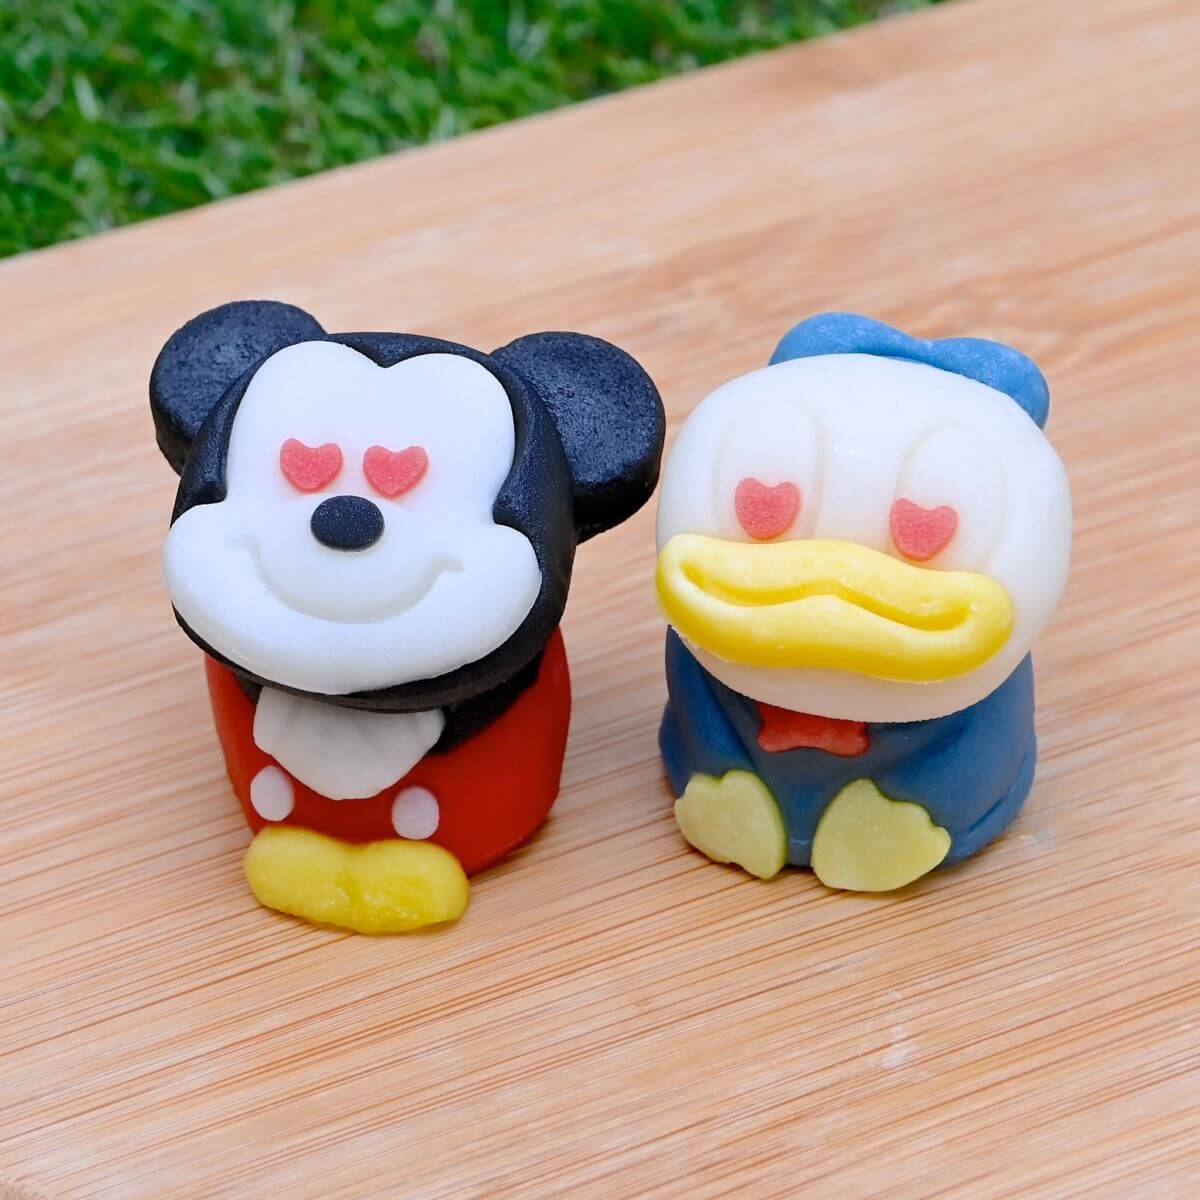 「食べマス Disney(ディズニー)」ミッキーマウス&ドナルドダック